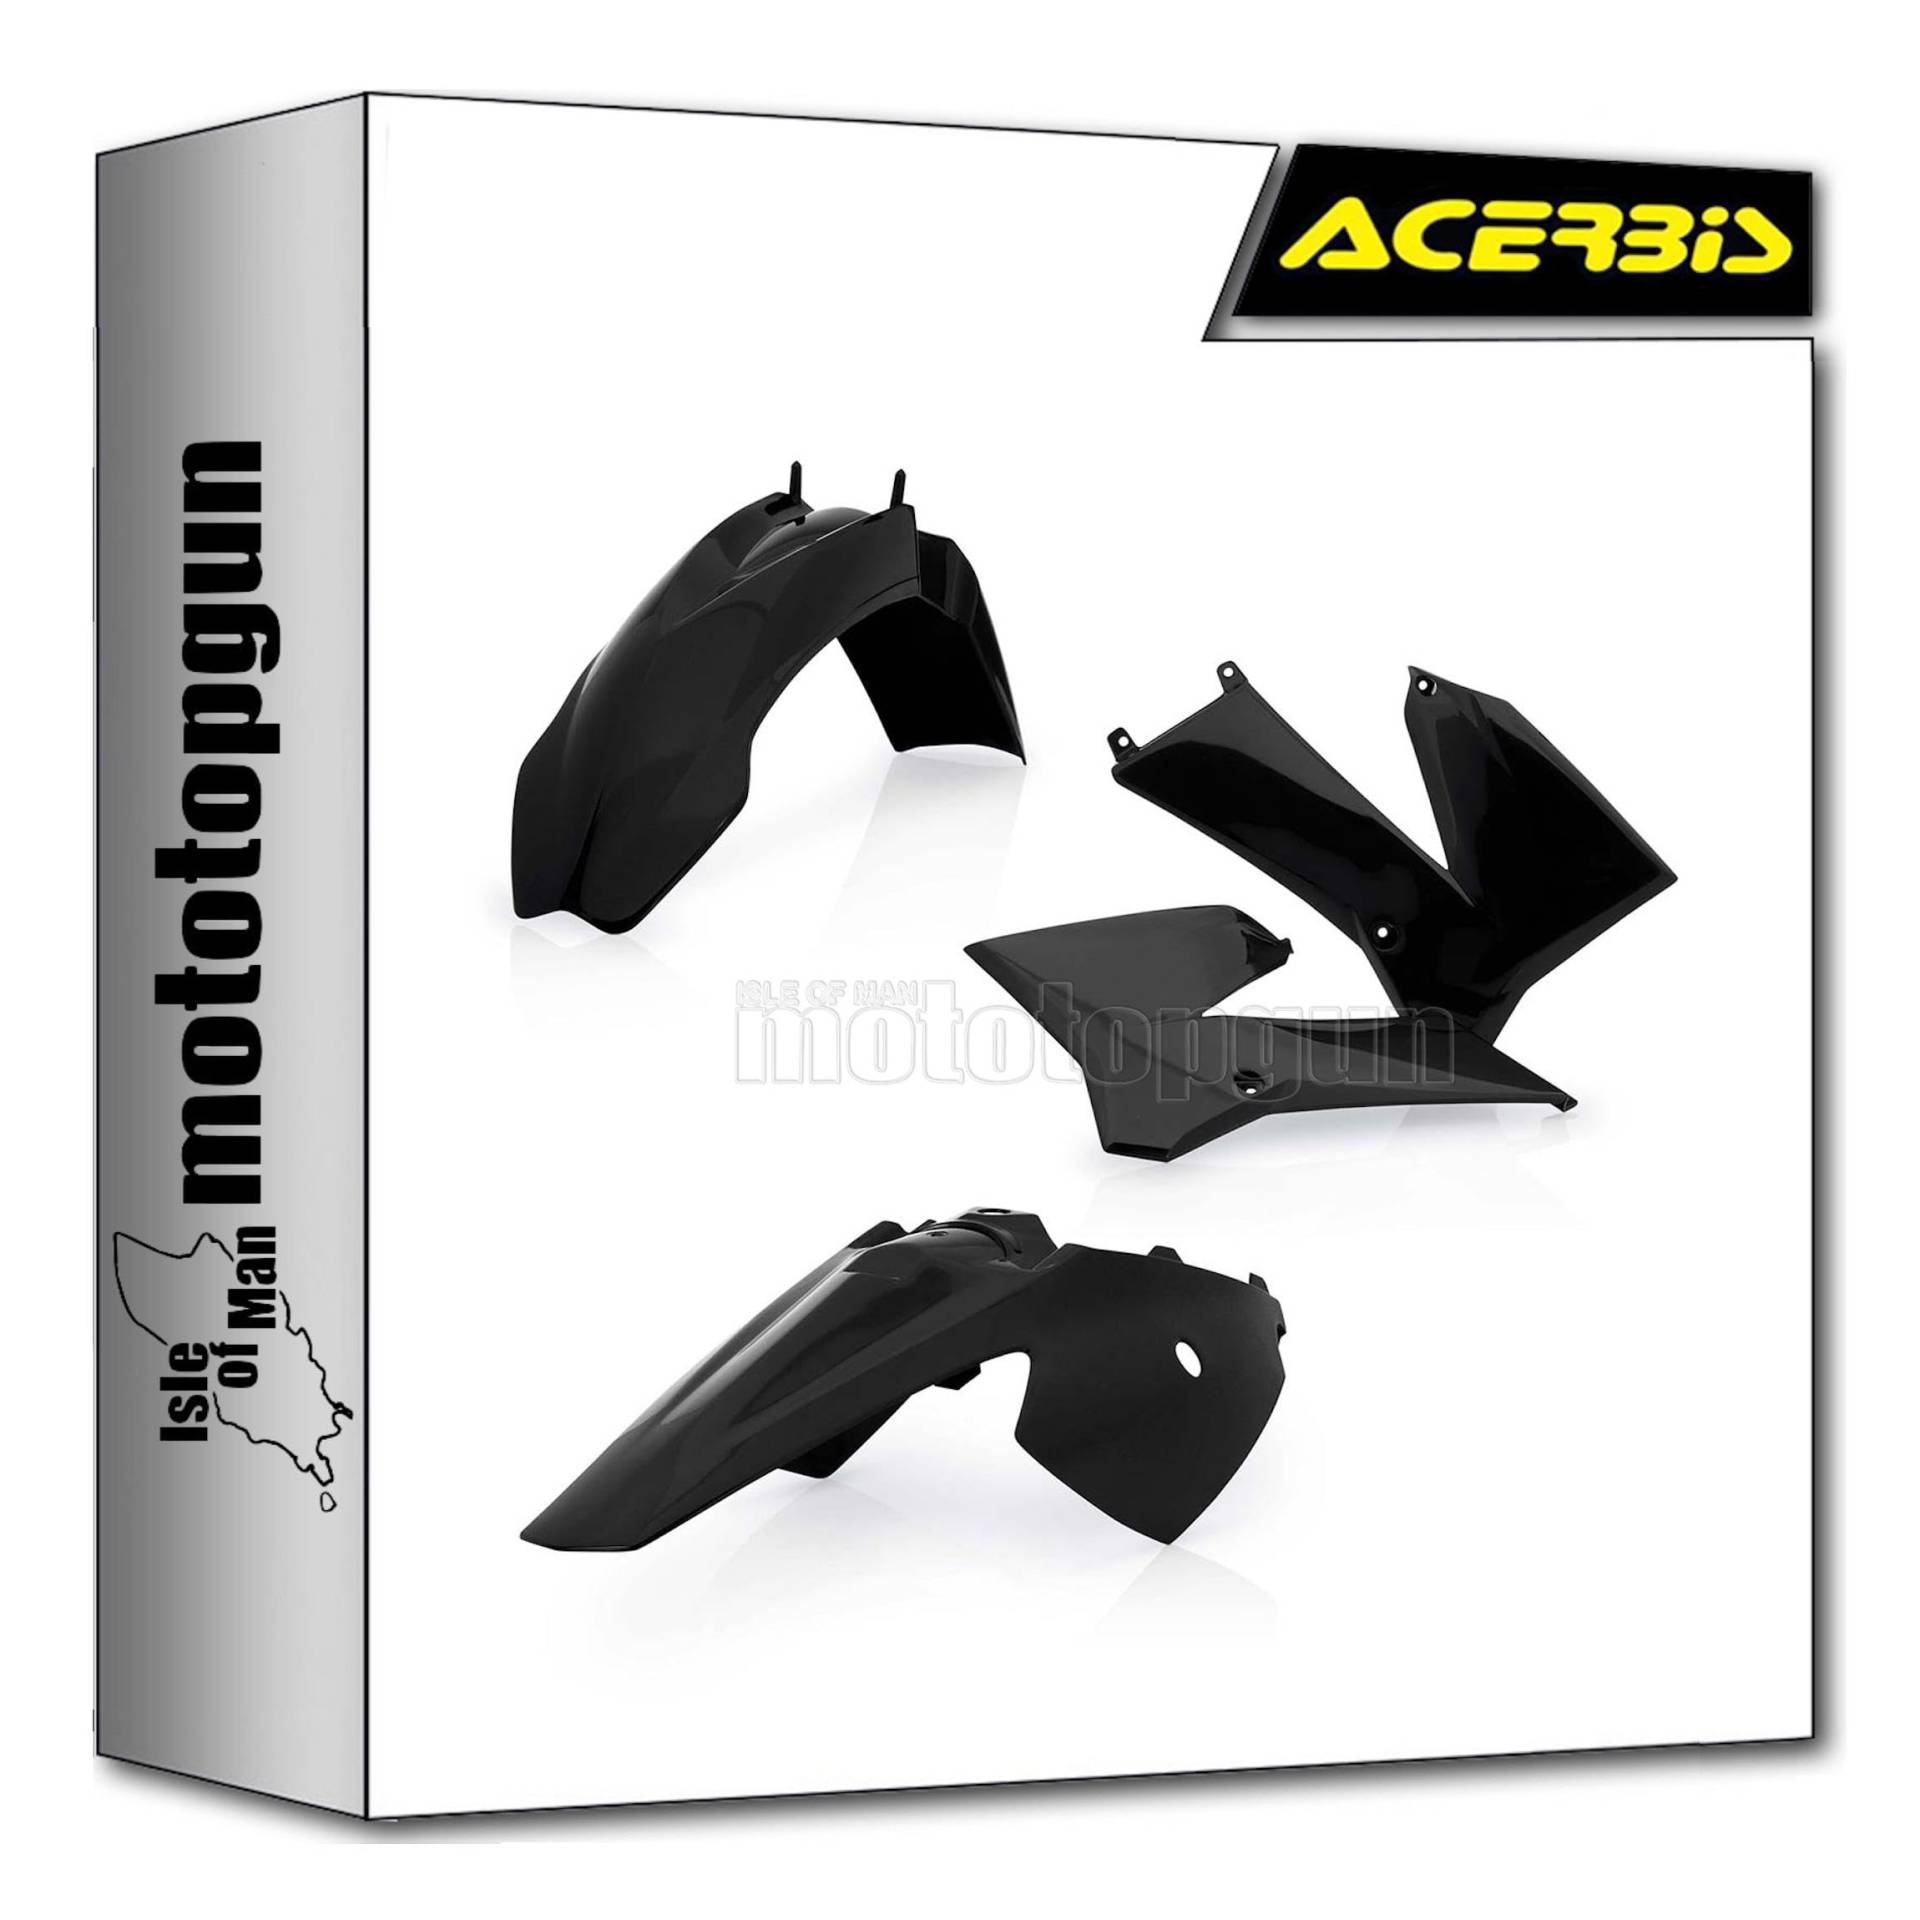 acerbis 0016372.090 plastics kit schwarz kompatibel mit ktm sx 85 2006 2007 2008 2009 2010 2011 2012 mototopgun von MOTOTOPGUN